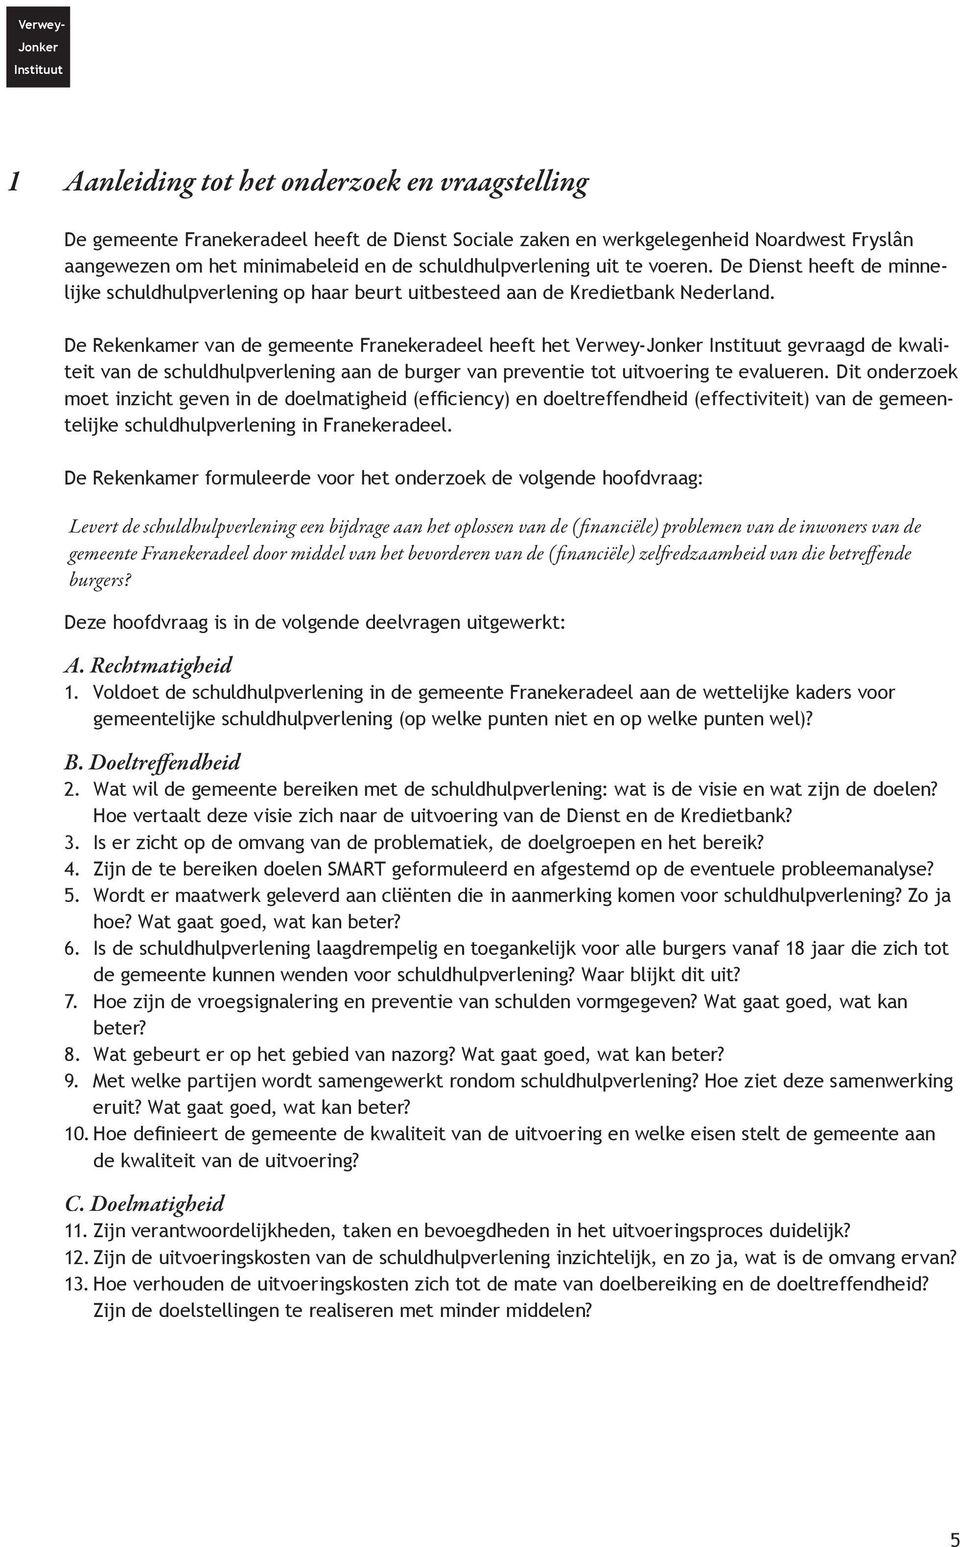 De Rekenkamer van de gemeente Franekeradeel heeft het Verwey-Jonker Instituut gevraagd de kwaliteit van de schuldhulpverlening aan de burger van preventie tot uitvoering te evalueren.